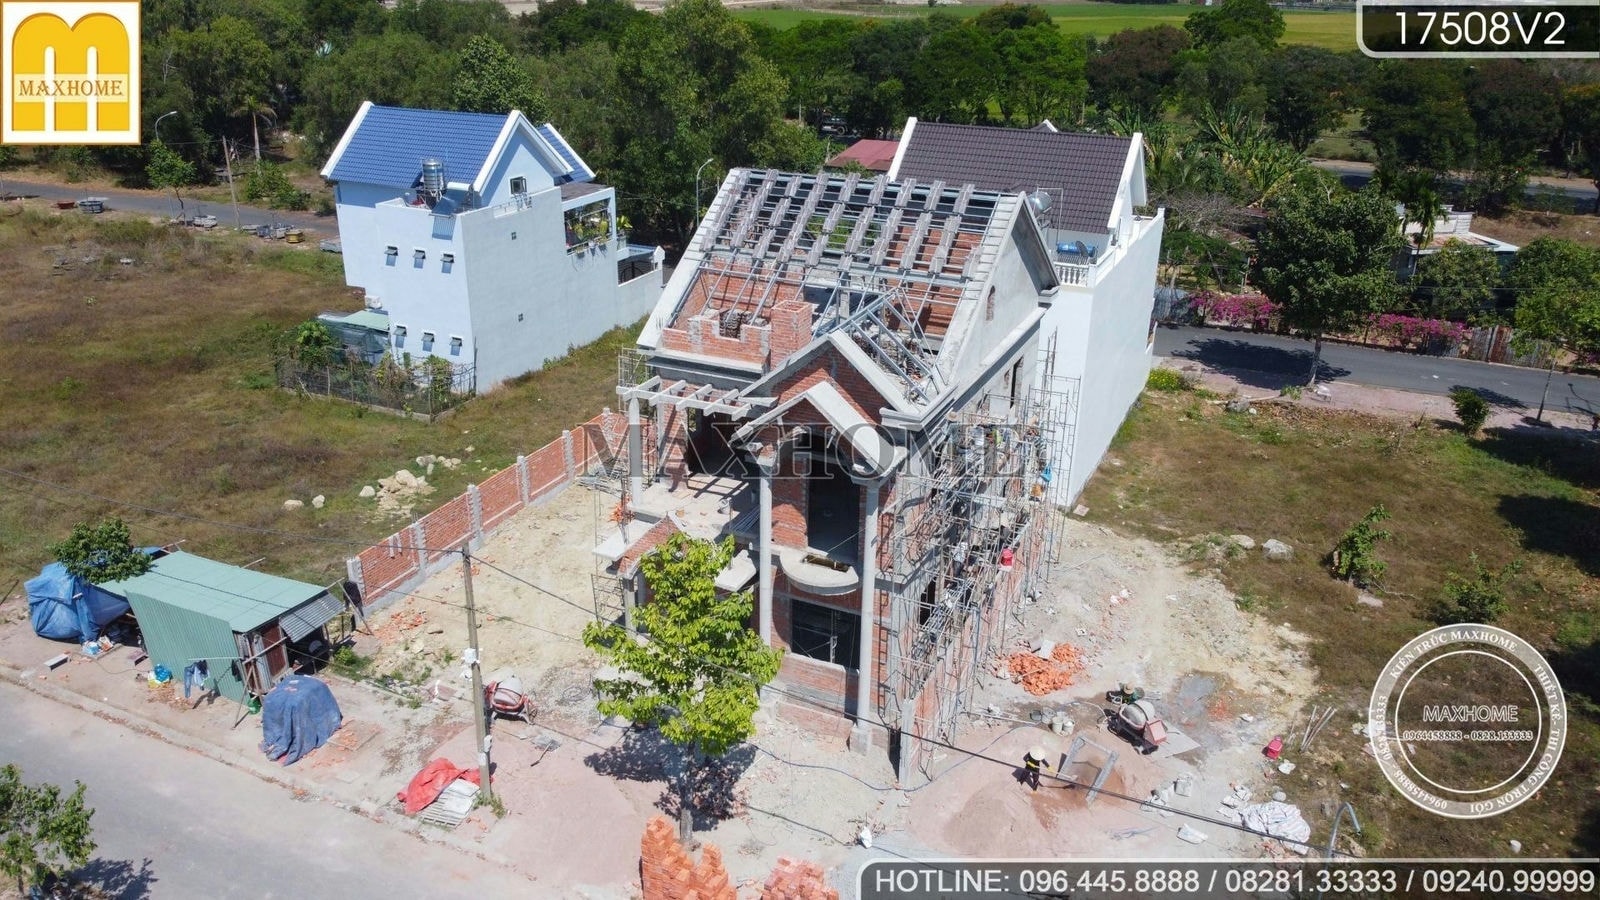 Ghé thăm tiến độ công trình nhà phố mái Thái cực kỳ đồ sộ tại Vũng Tàu